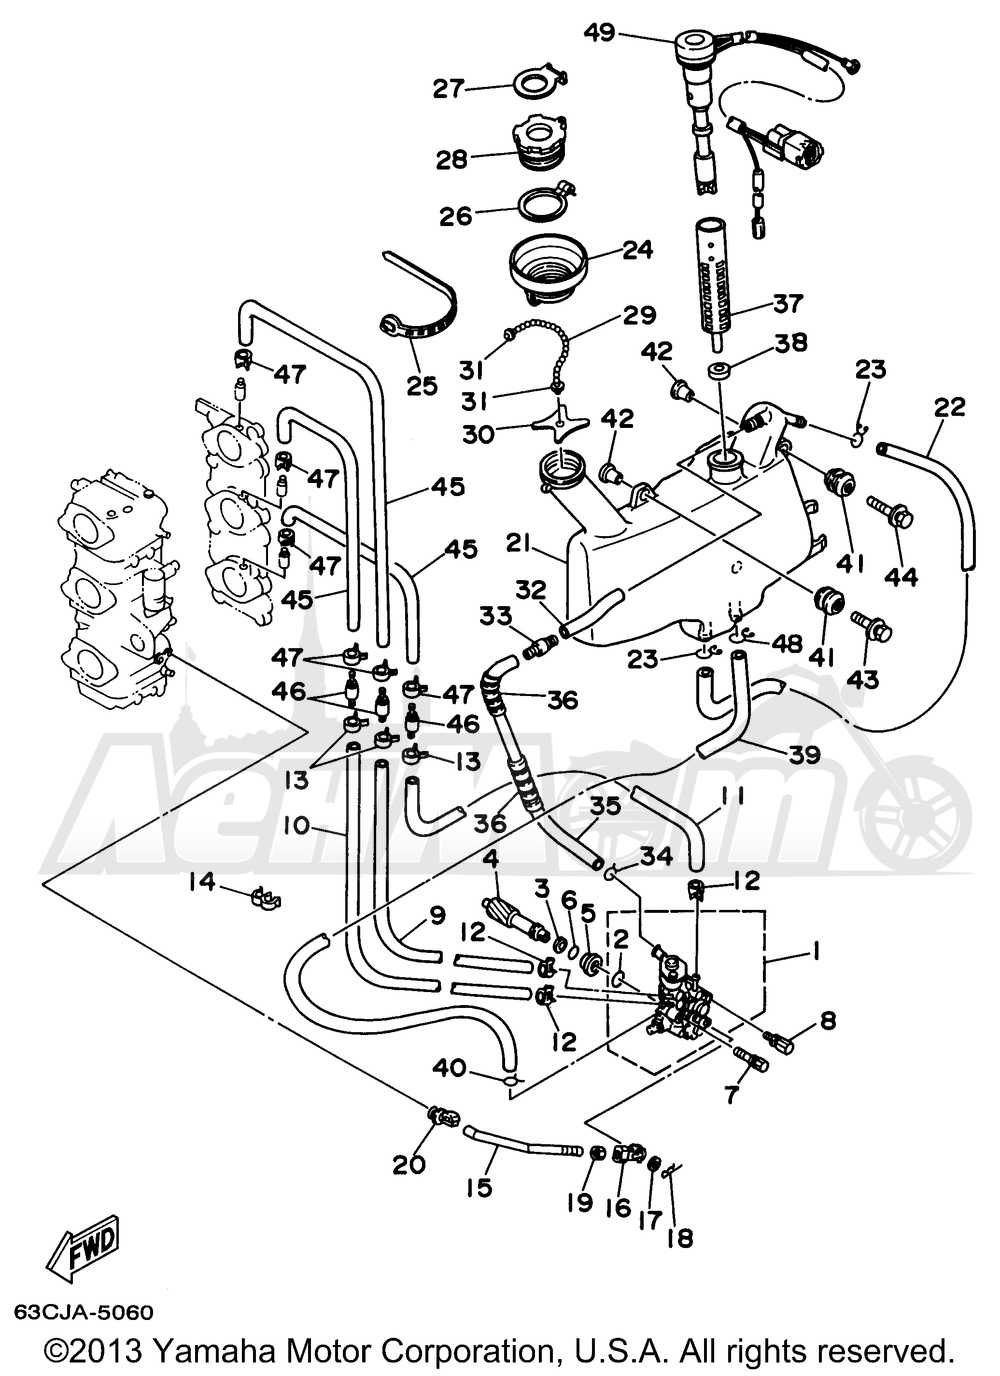 Запчасти для Лодочного мотора Yamaha 1997 40TLRV/50TLHV/40MLHV/40MSHV/50EJRV/40TLHV/40EJRV/50ELRV/50TLRV/40ELRV/40MJHV/40ESRV Раздел: OIL PUMP 2 (ER TH TR) | маслянный насос 2 (ER TH TR)